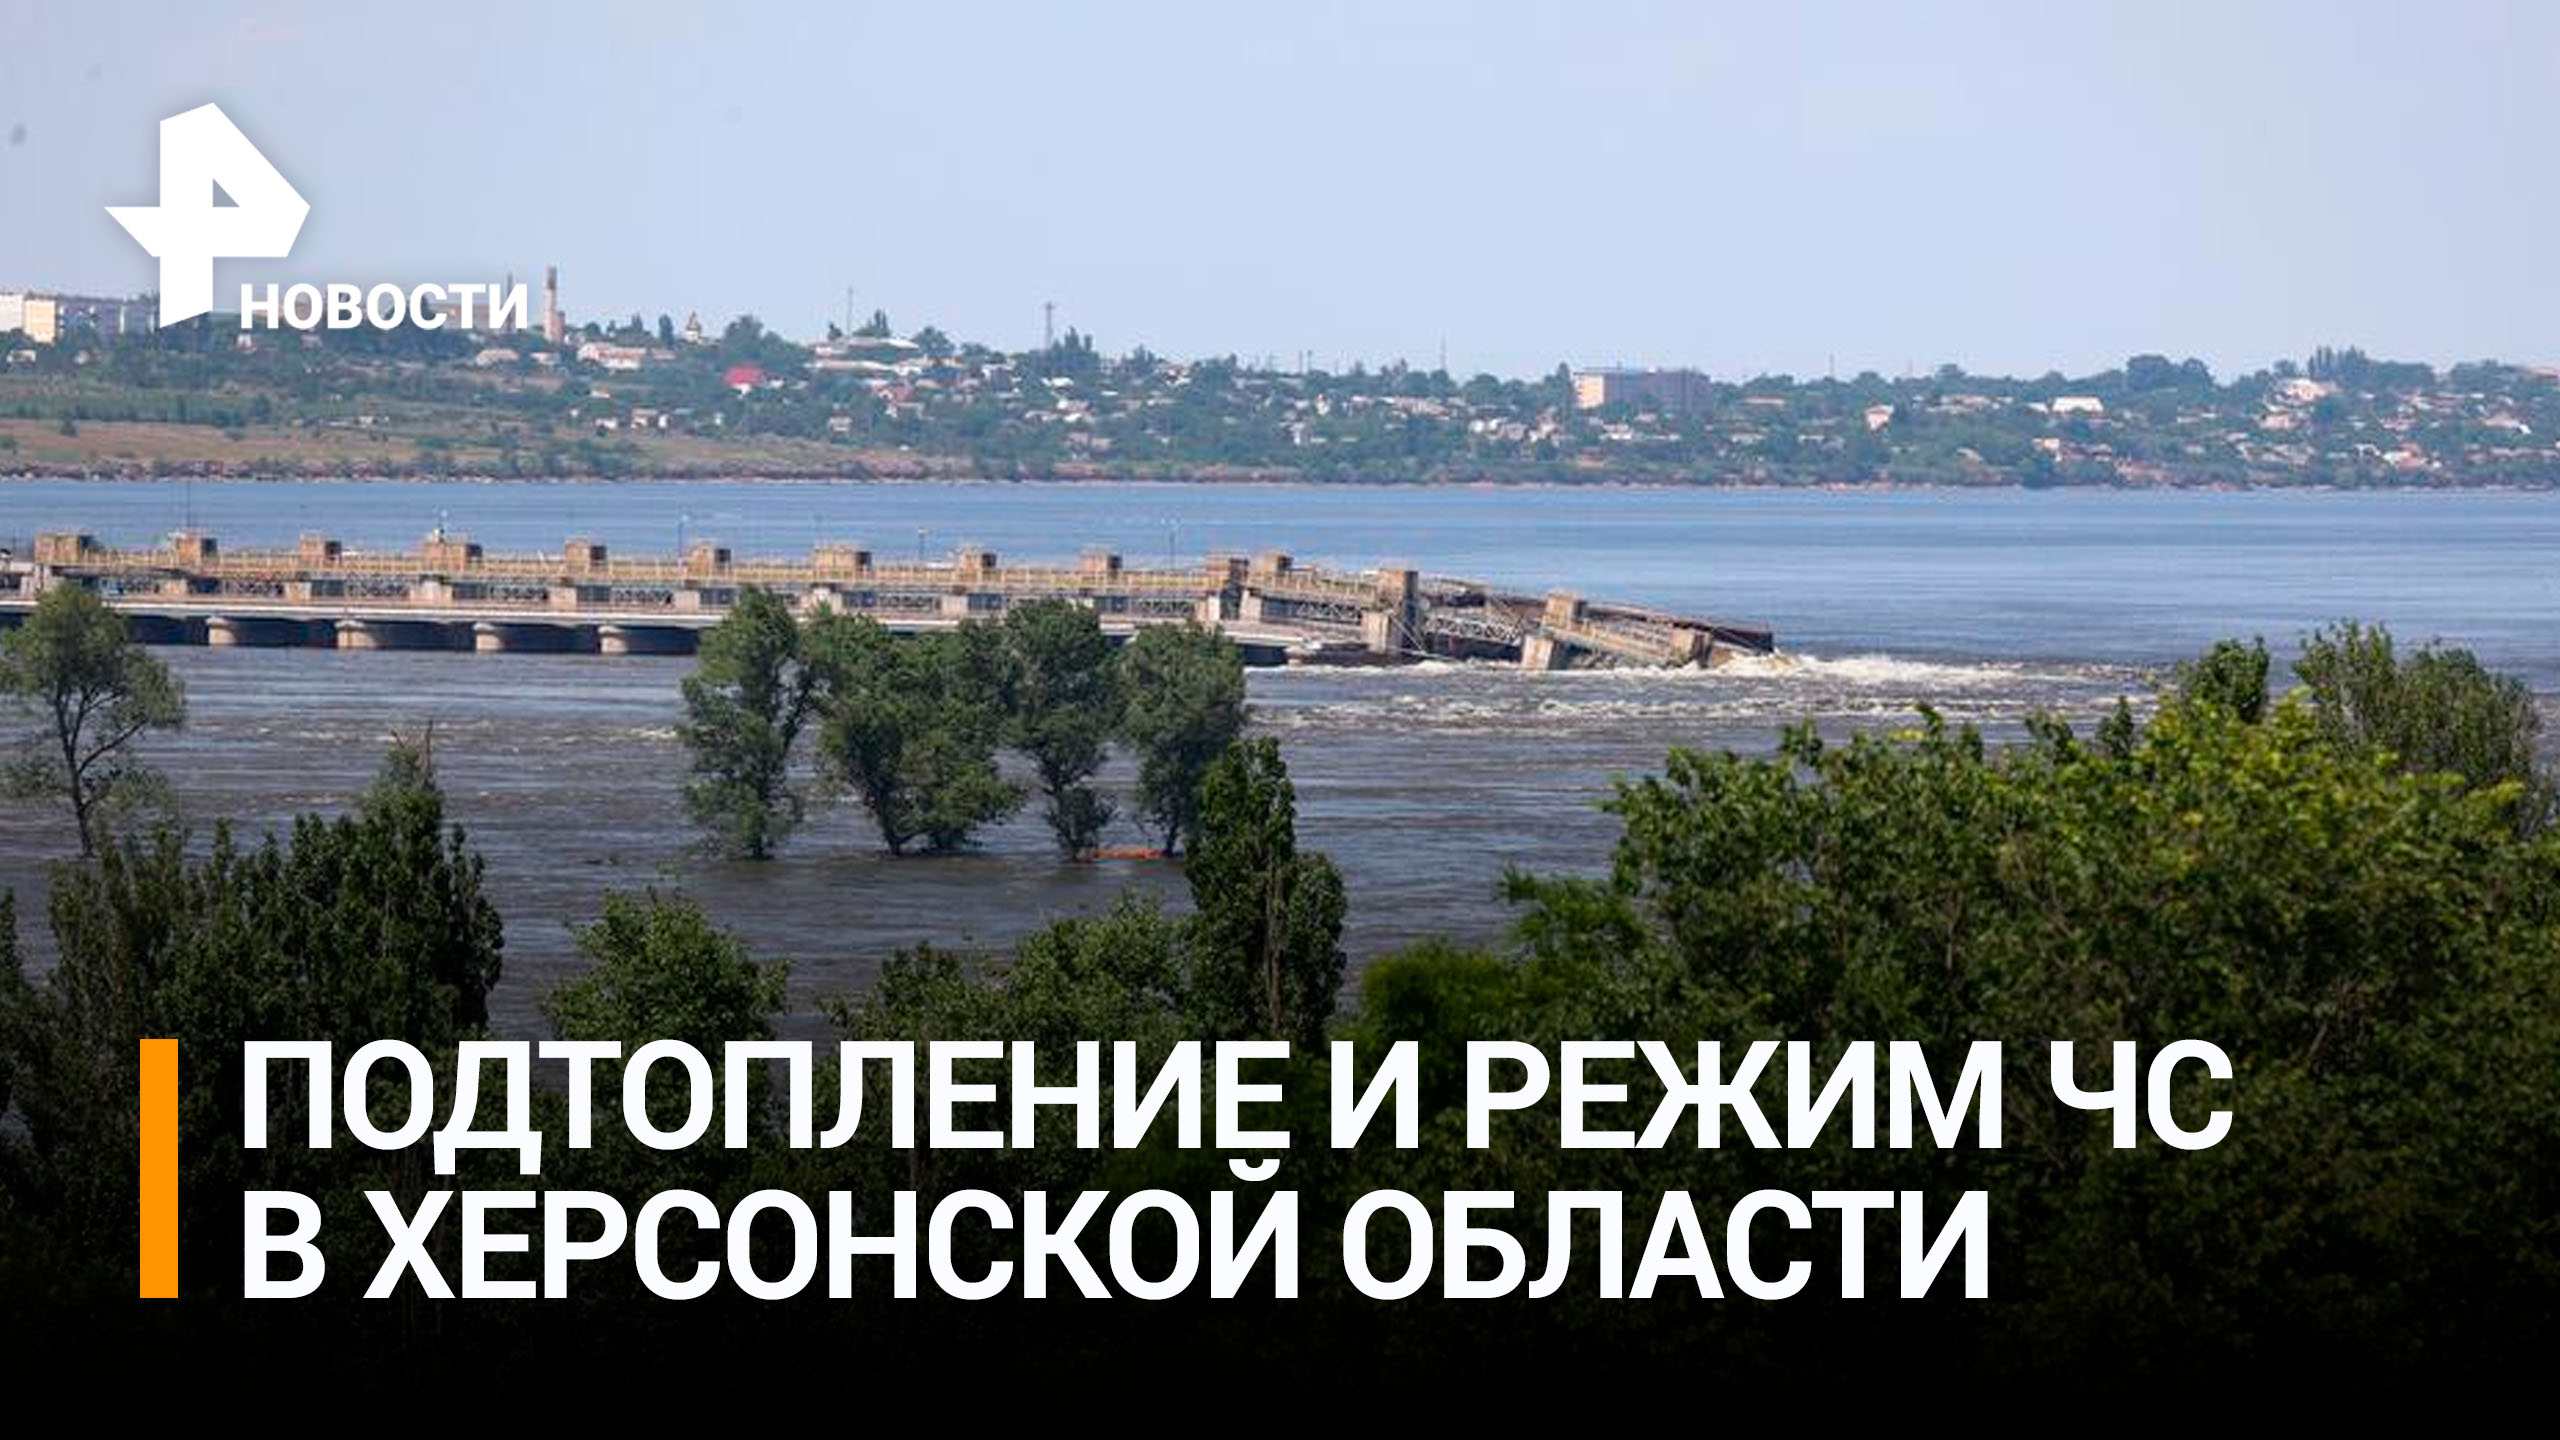 Режим ЧС ввели в Херсонской области из-за прорыва Каховской ГЭС / РЕН Новости